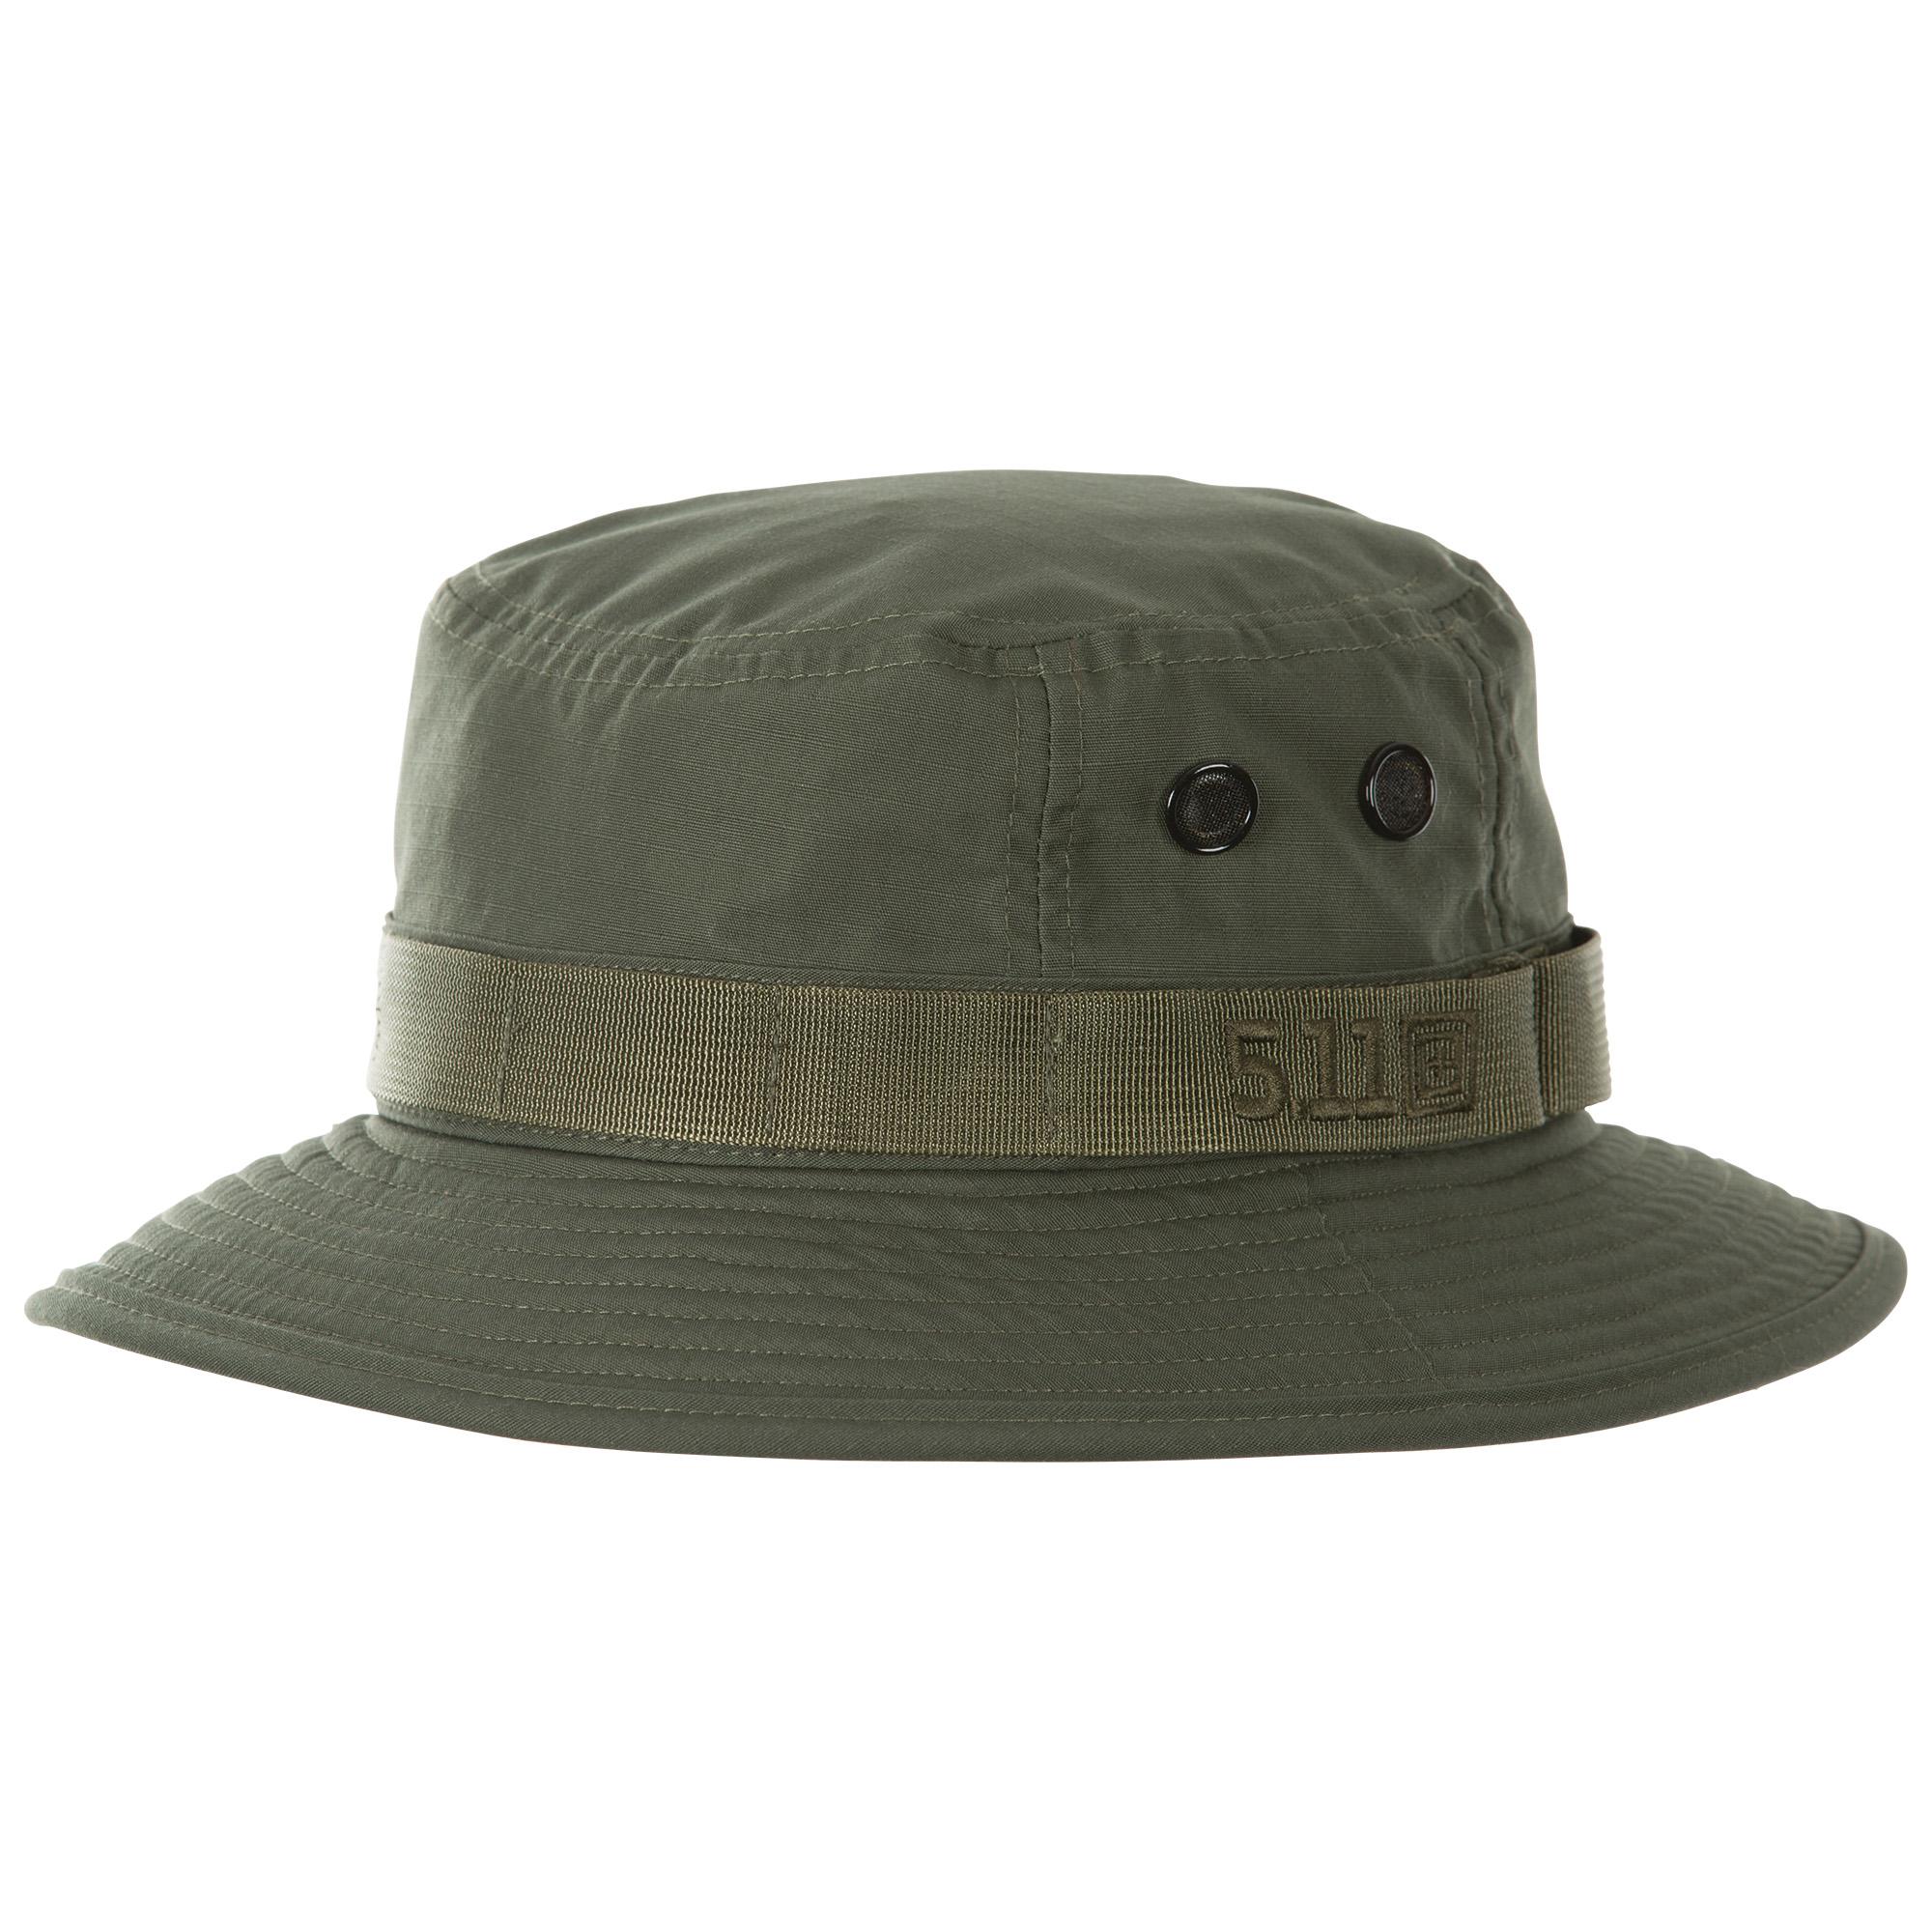 5.11 boonie hat - Headgear | Prefair